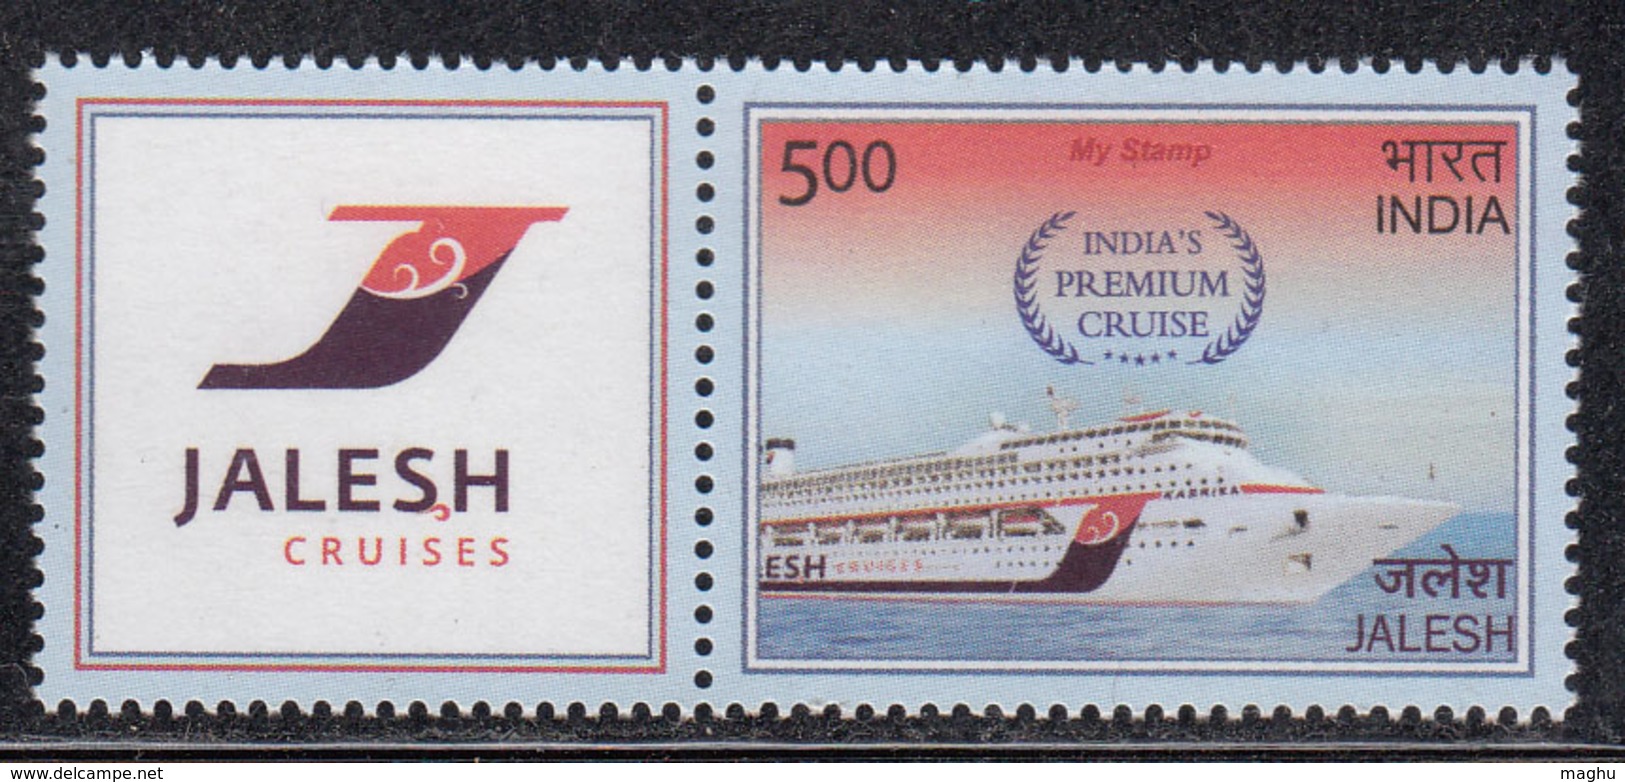 'Jalesh', India Premium Cruise, My Stamp India 2019  Ship,Transport, - Ongebruikt